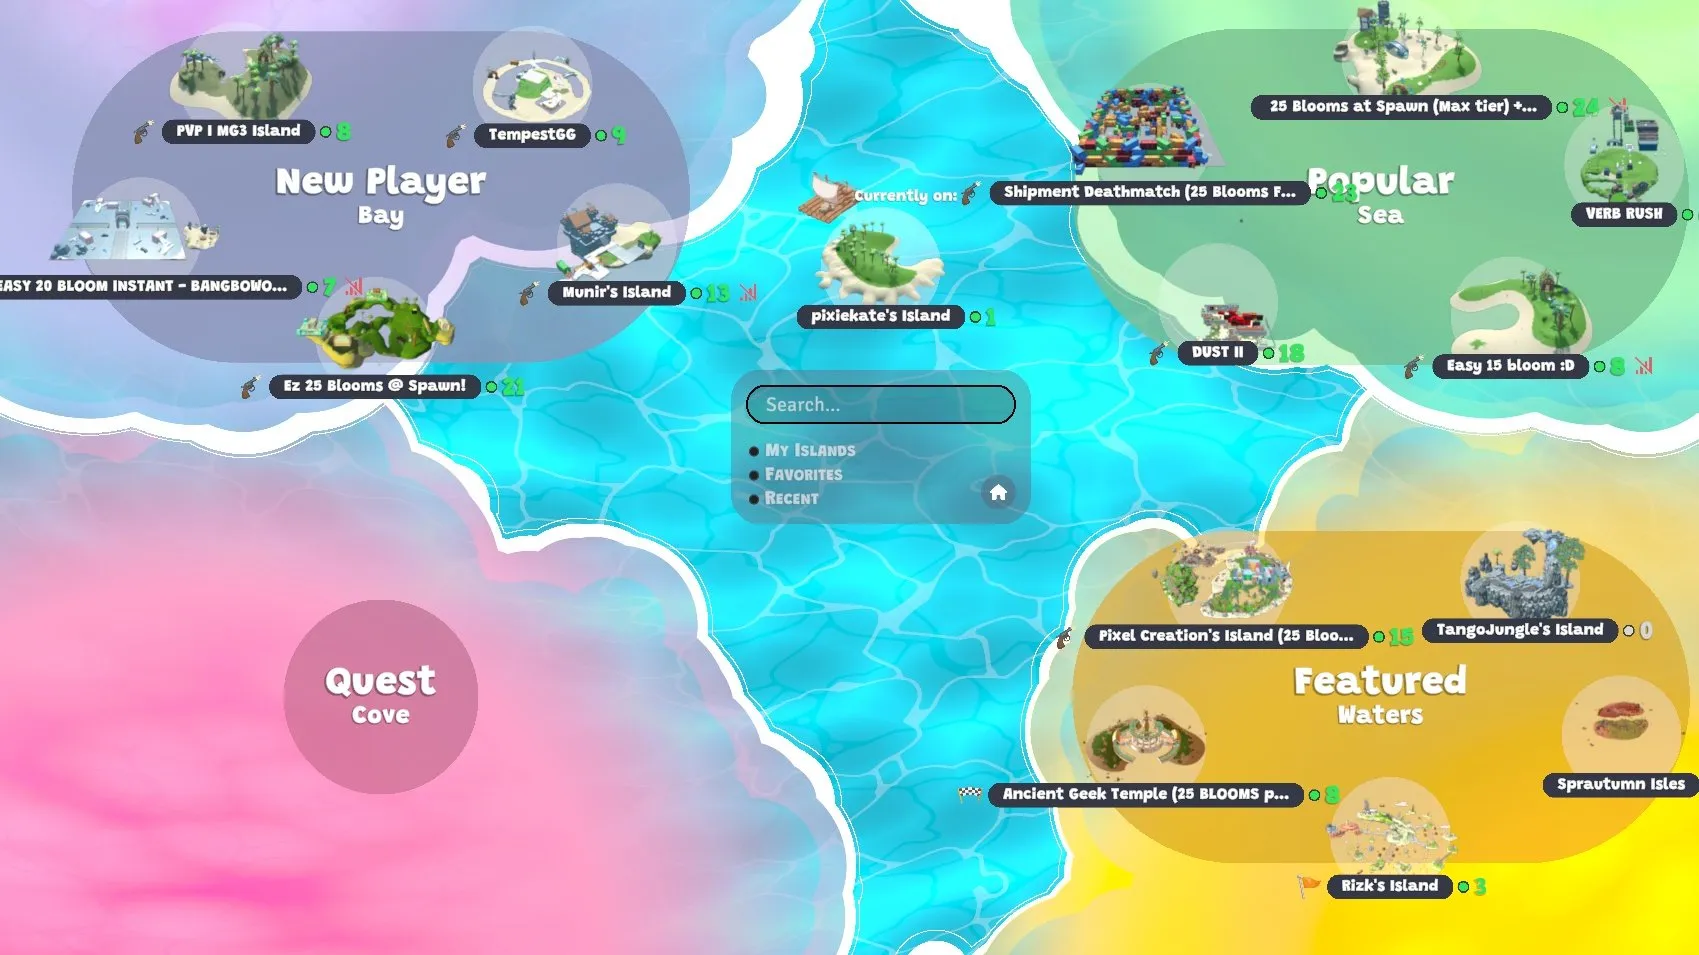 Schermafbeelding van het spel met een kaart met populaire eilanden, 'aanbevolen' eilanden en eilanden die zijn gericht op nieuwe spelers.